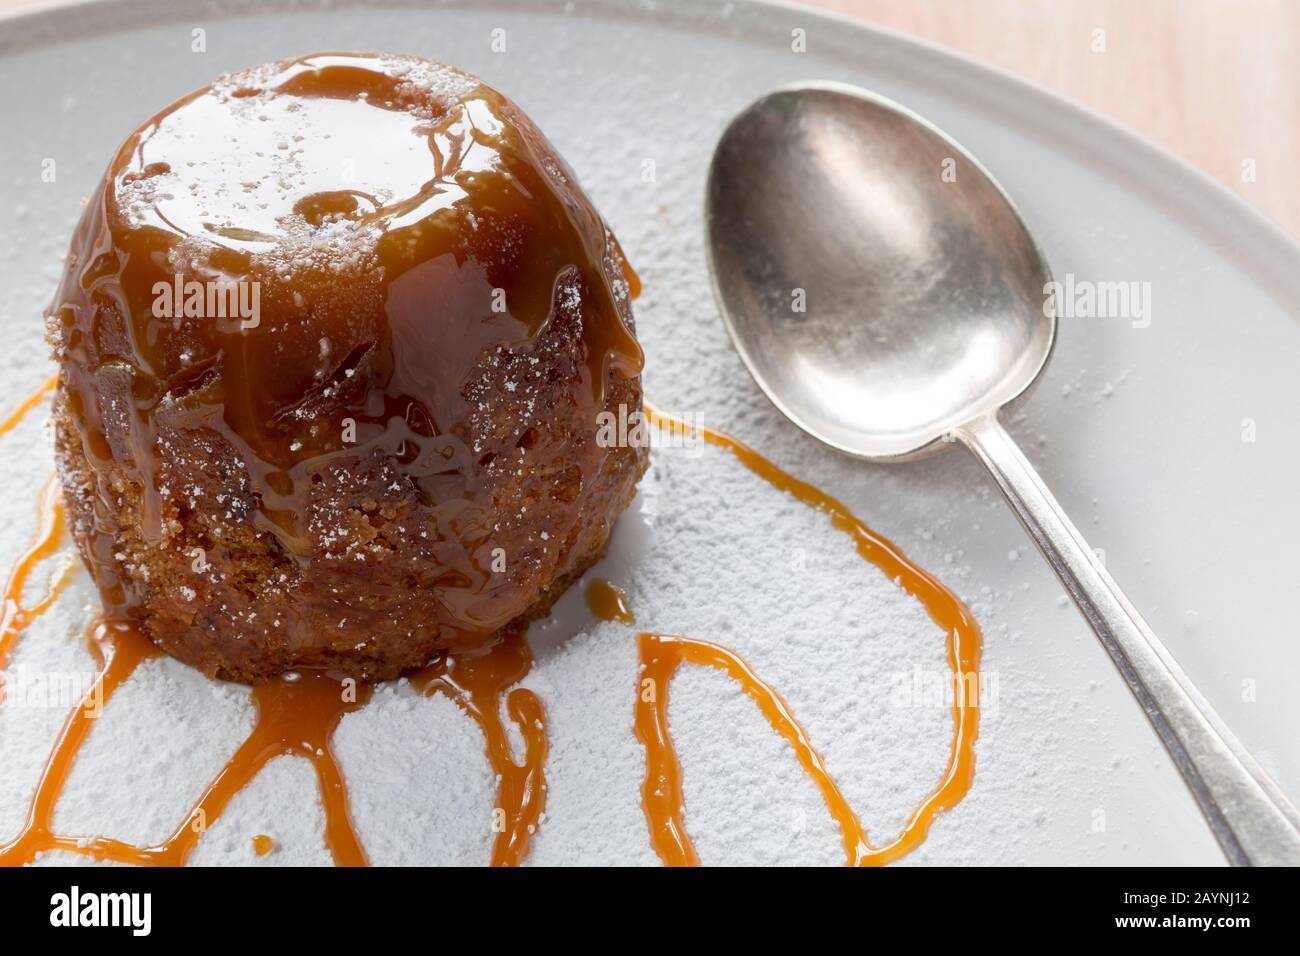 Pudding de toffee pegajoso en un plato blanco de azúcar espolvoreado con salsa de caramelo con una cuchara Foto de stock